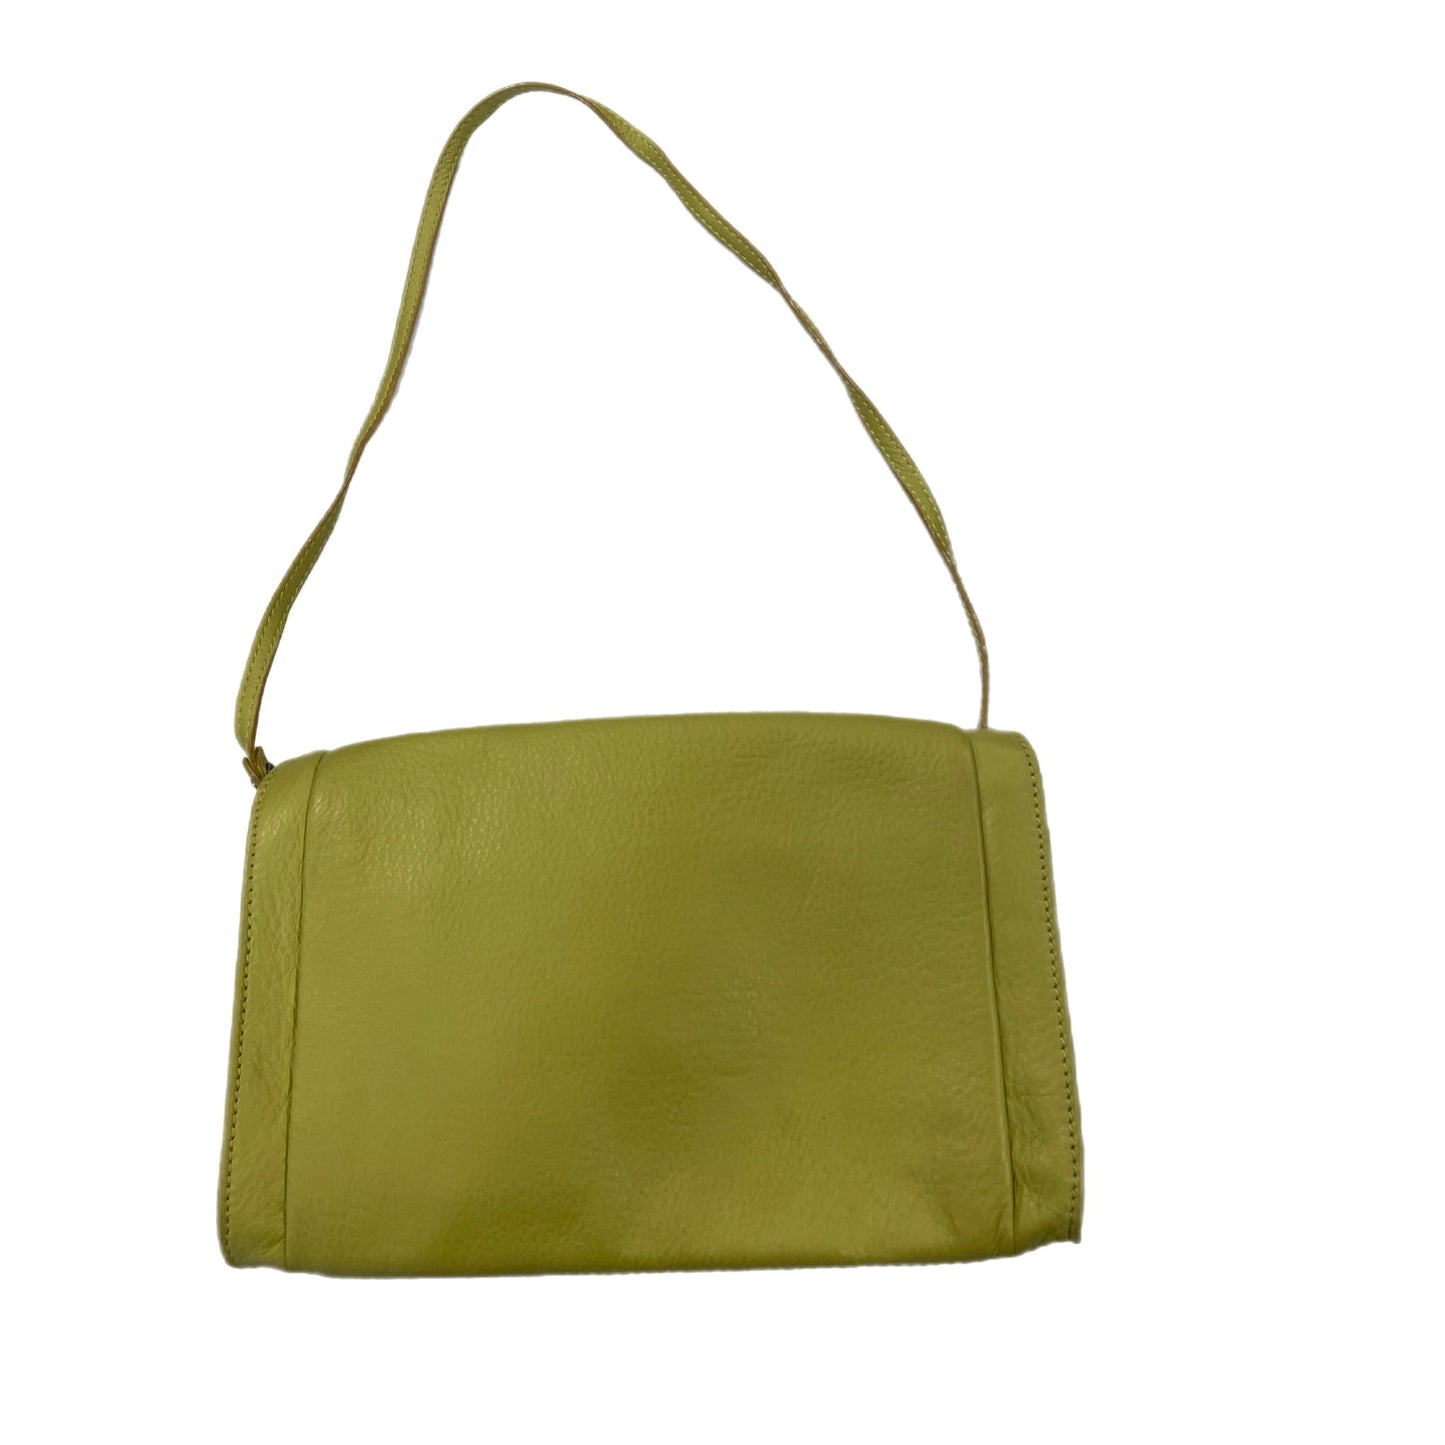 Handbag By Elliot Lucca  Size: Medium